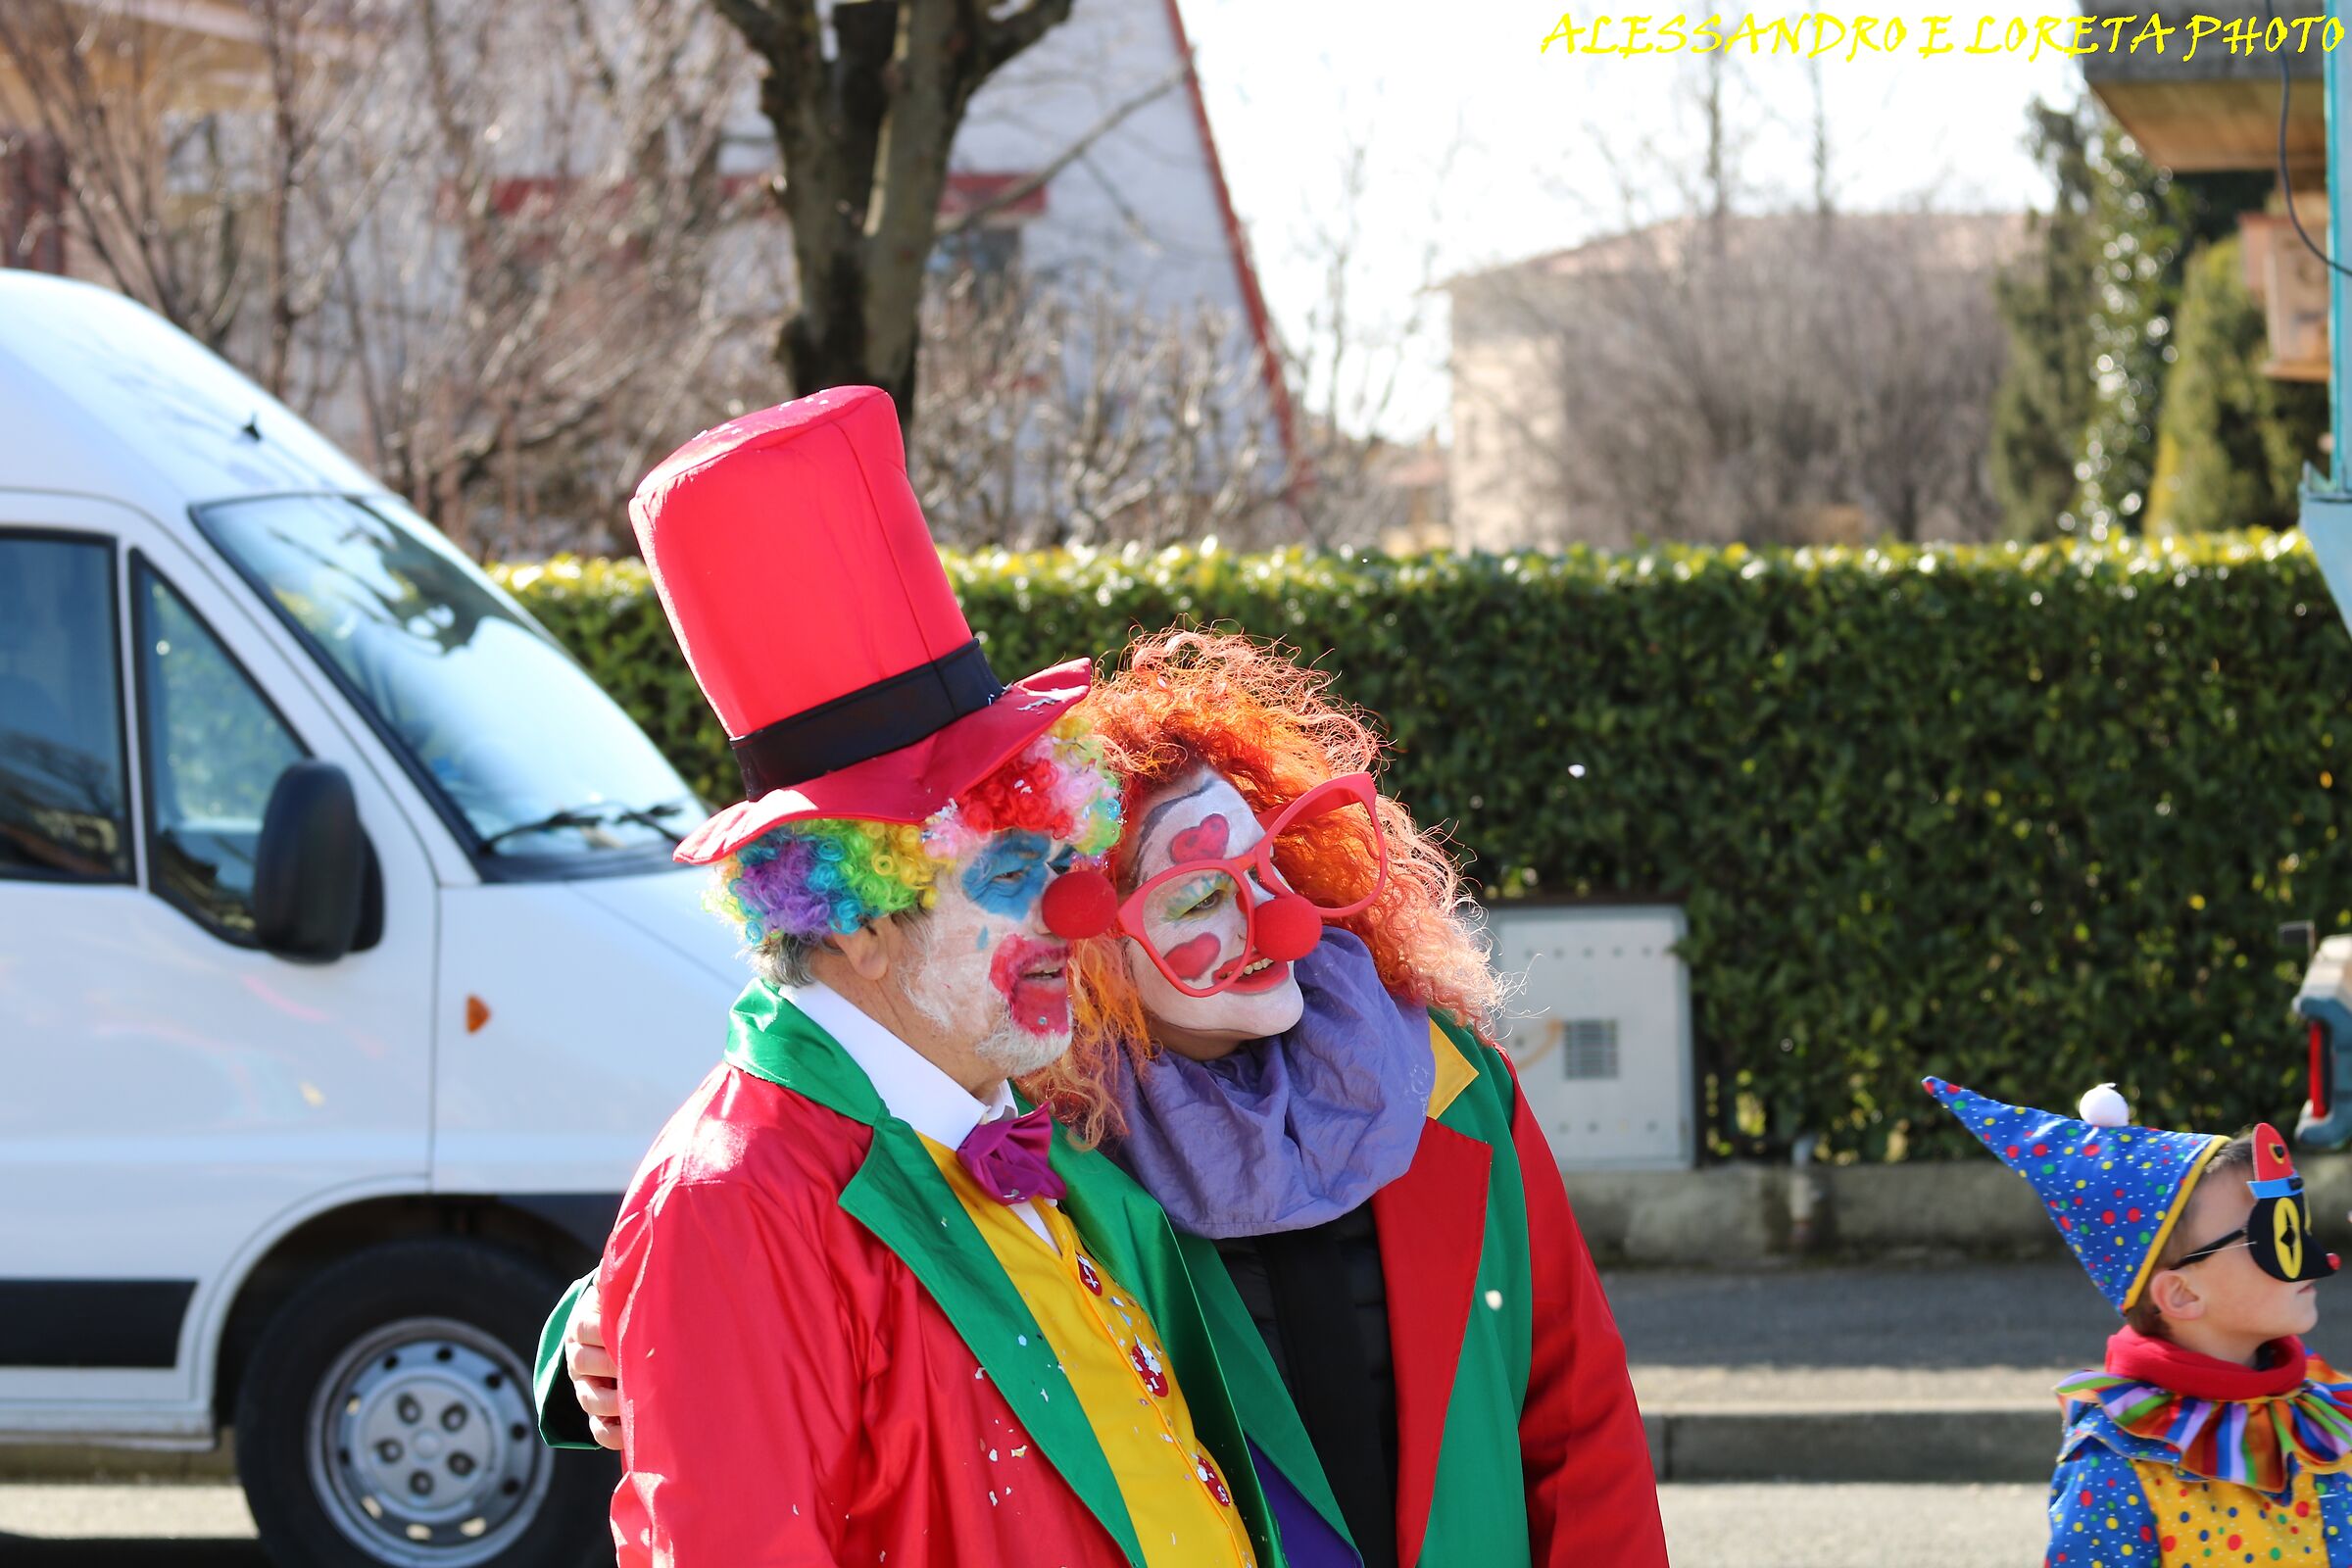 Carpenedolo Carnival 19 I Clowns ...